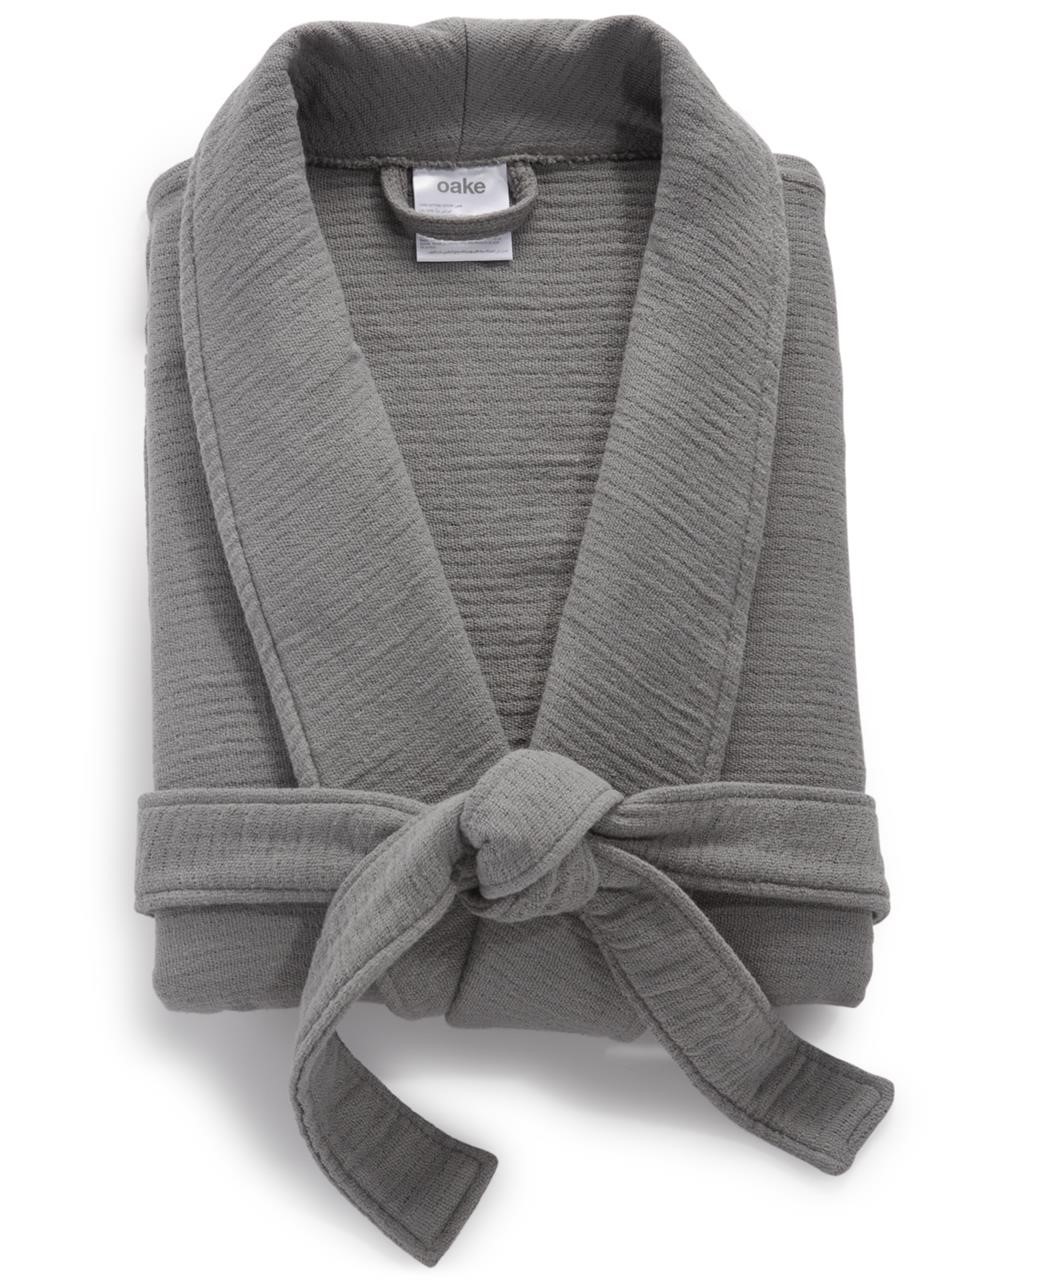 Oake Gauze Robe, Created for Macy's - Charcoal